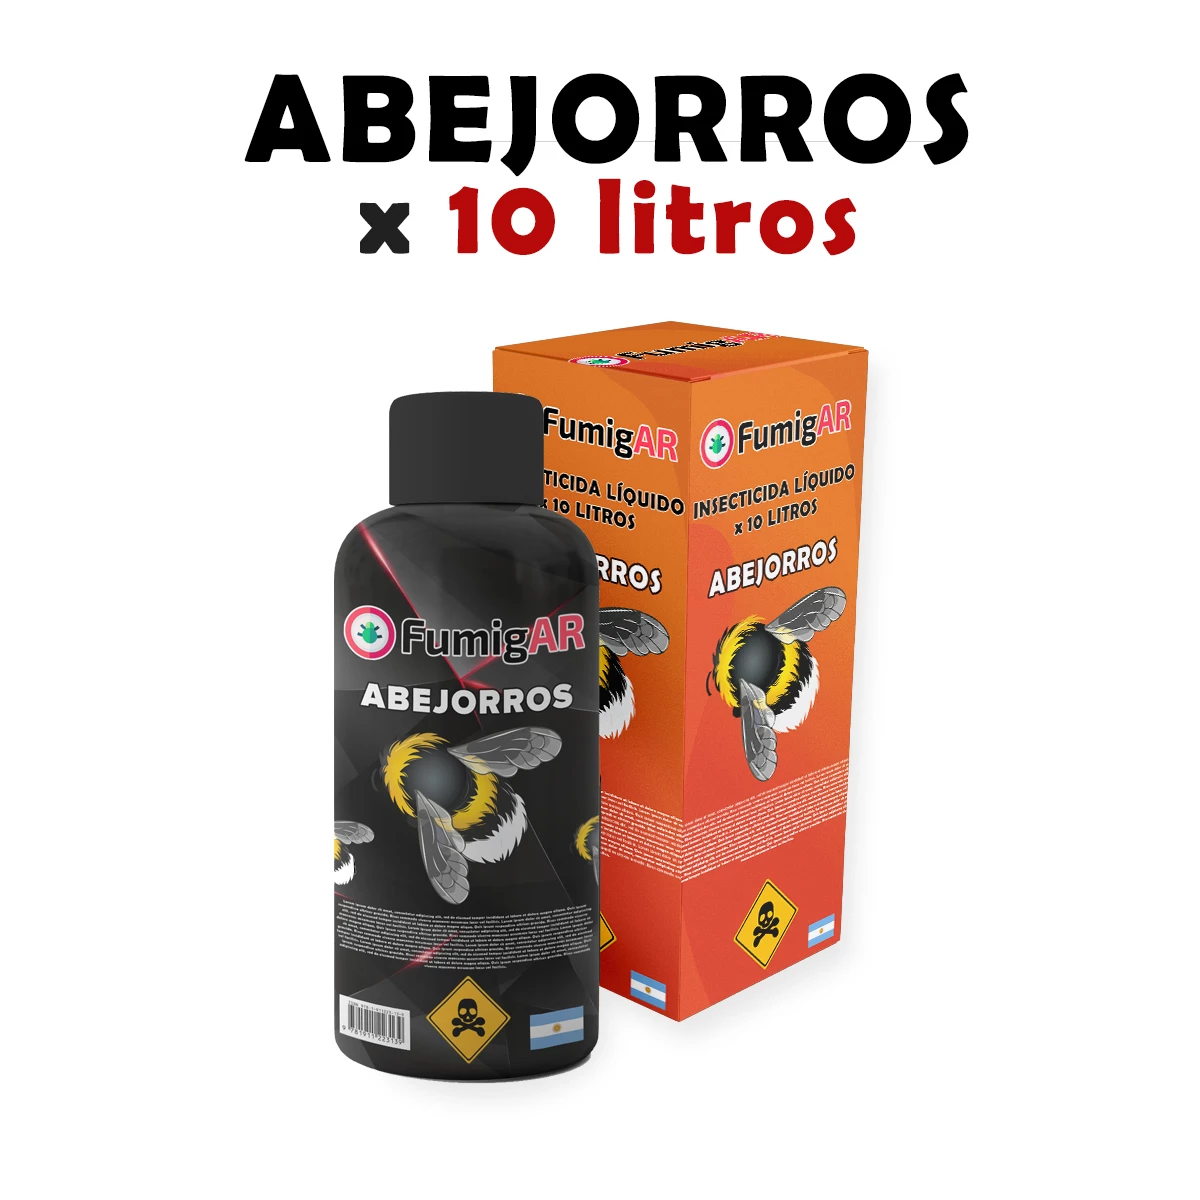 Insecticida Veneno Liquido Para Fumigar Abejorros - 10 litros